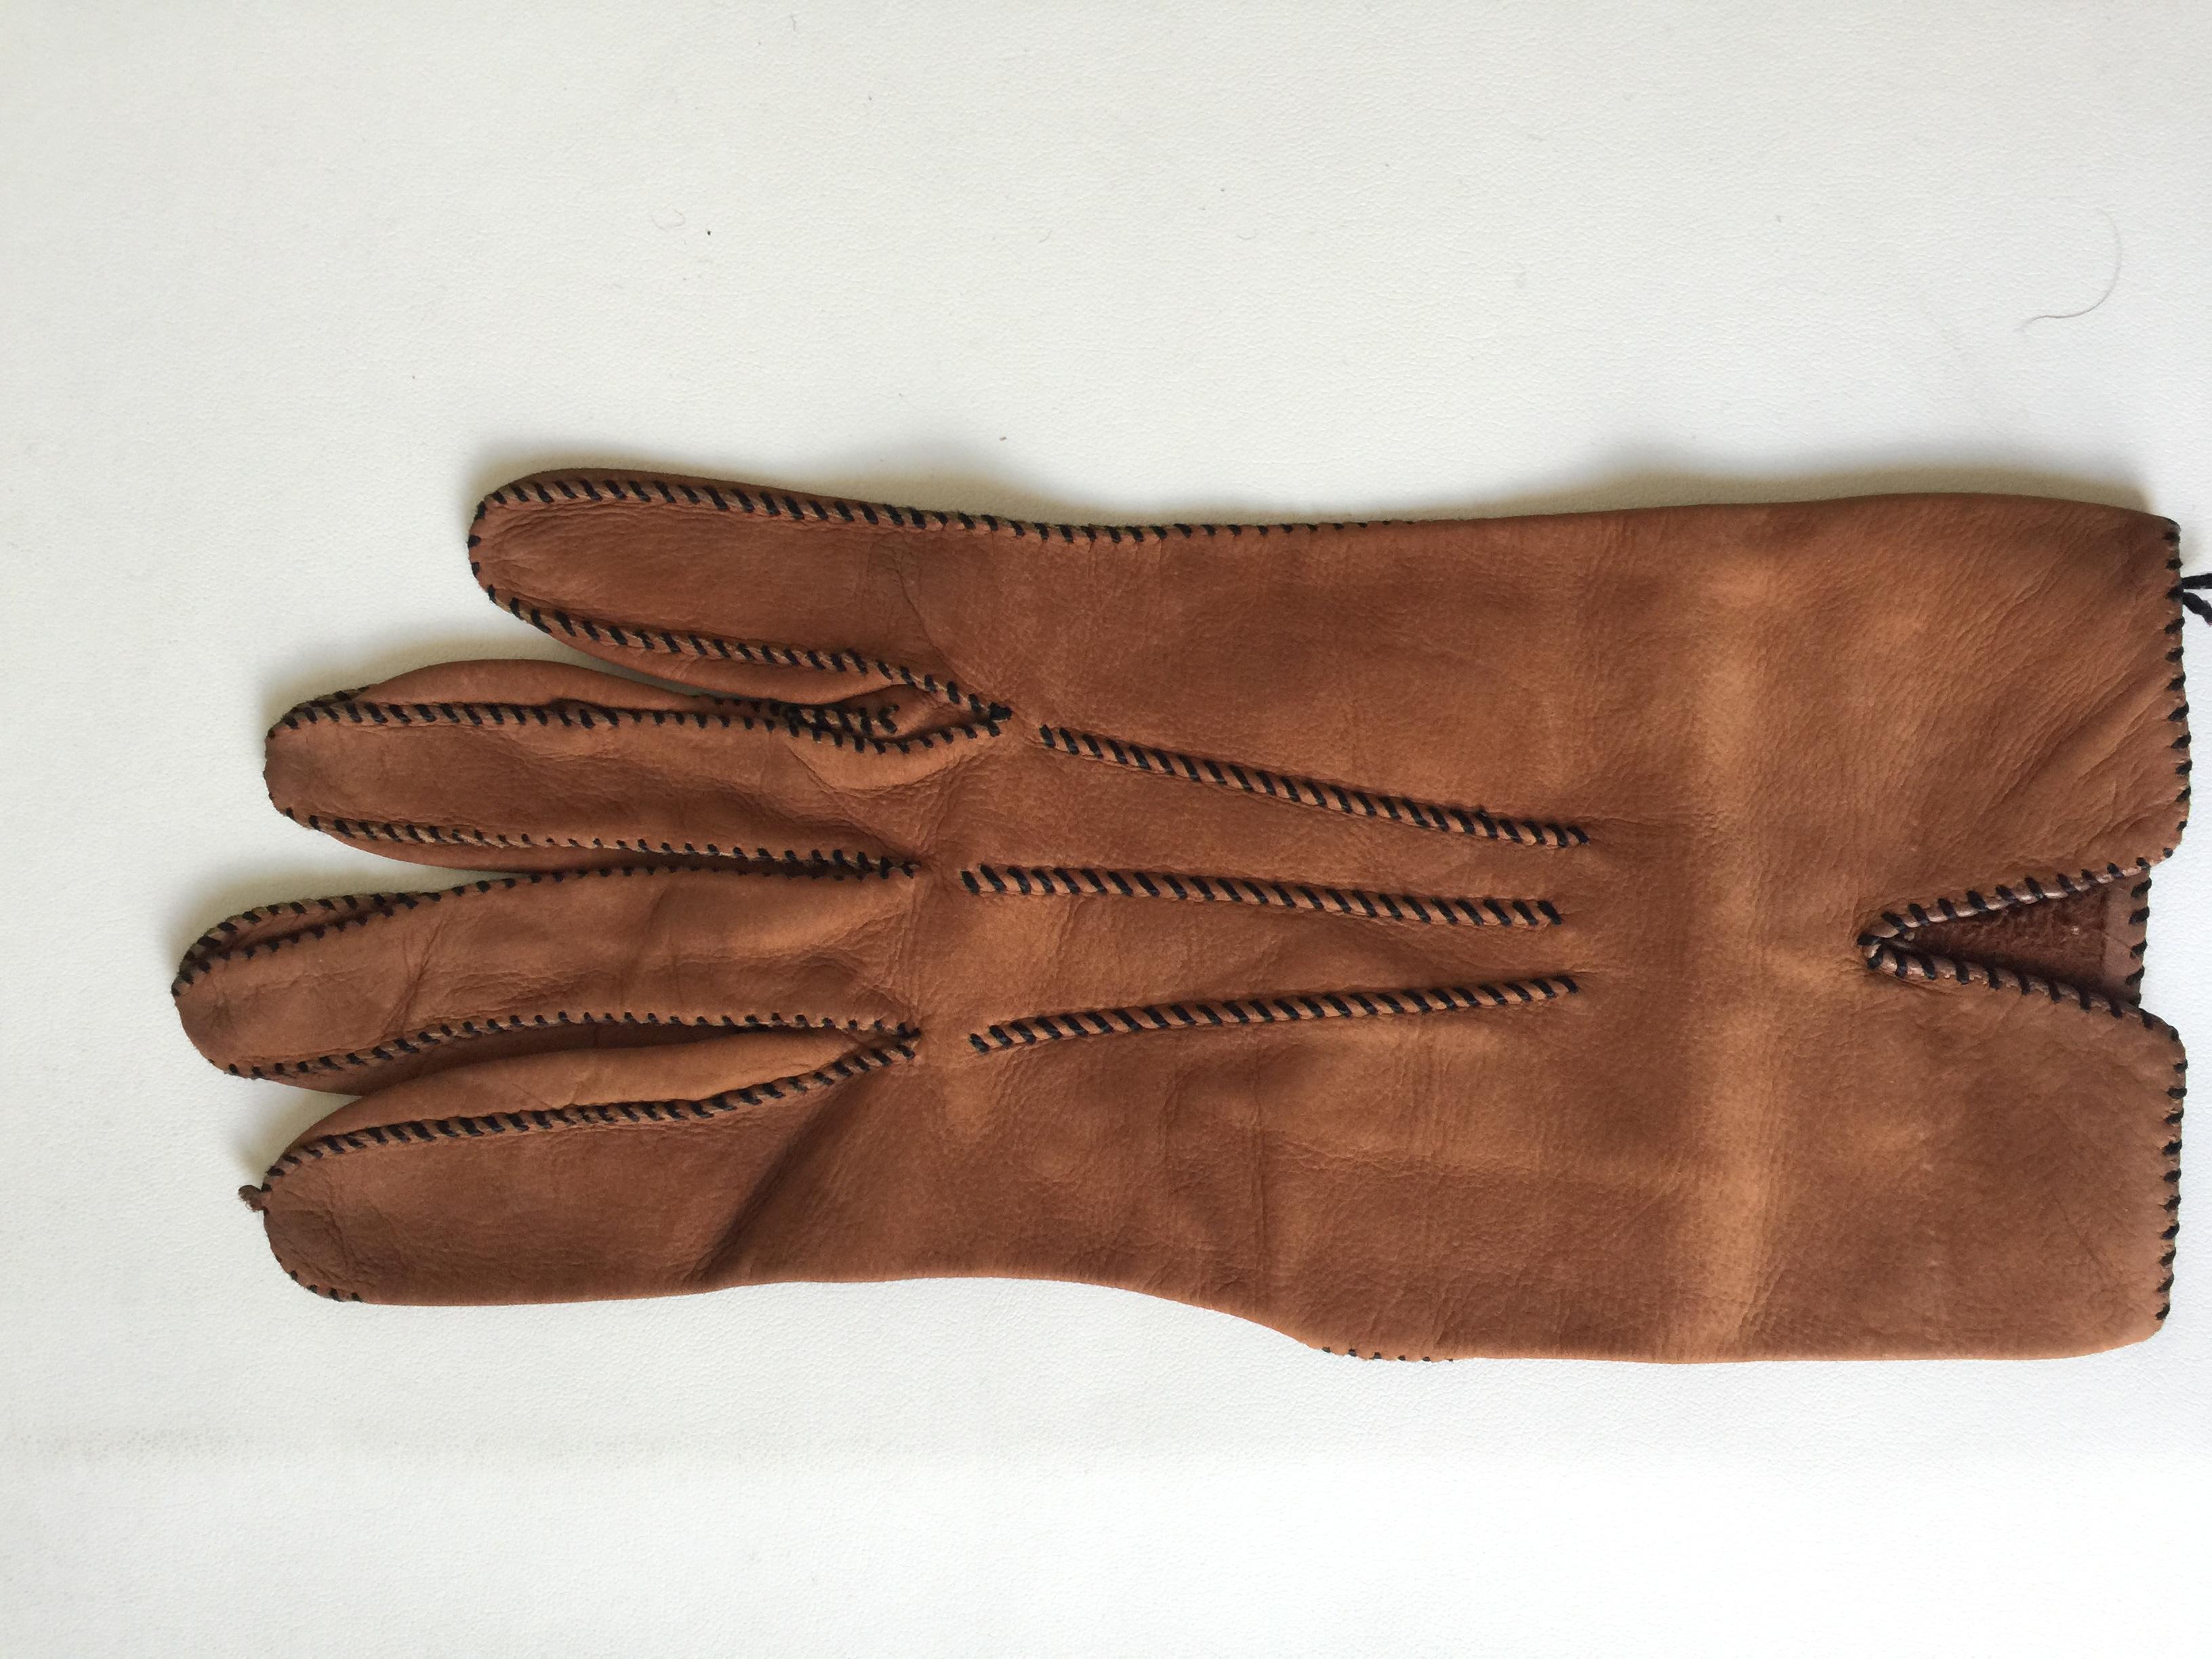 Vintage Hermes kid leather Gloves. Estimated size 71/2
See matching bag.